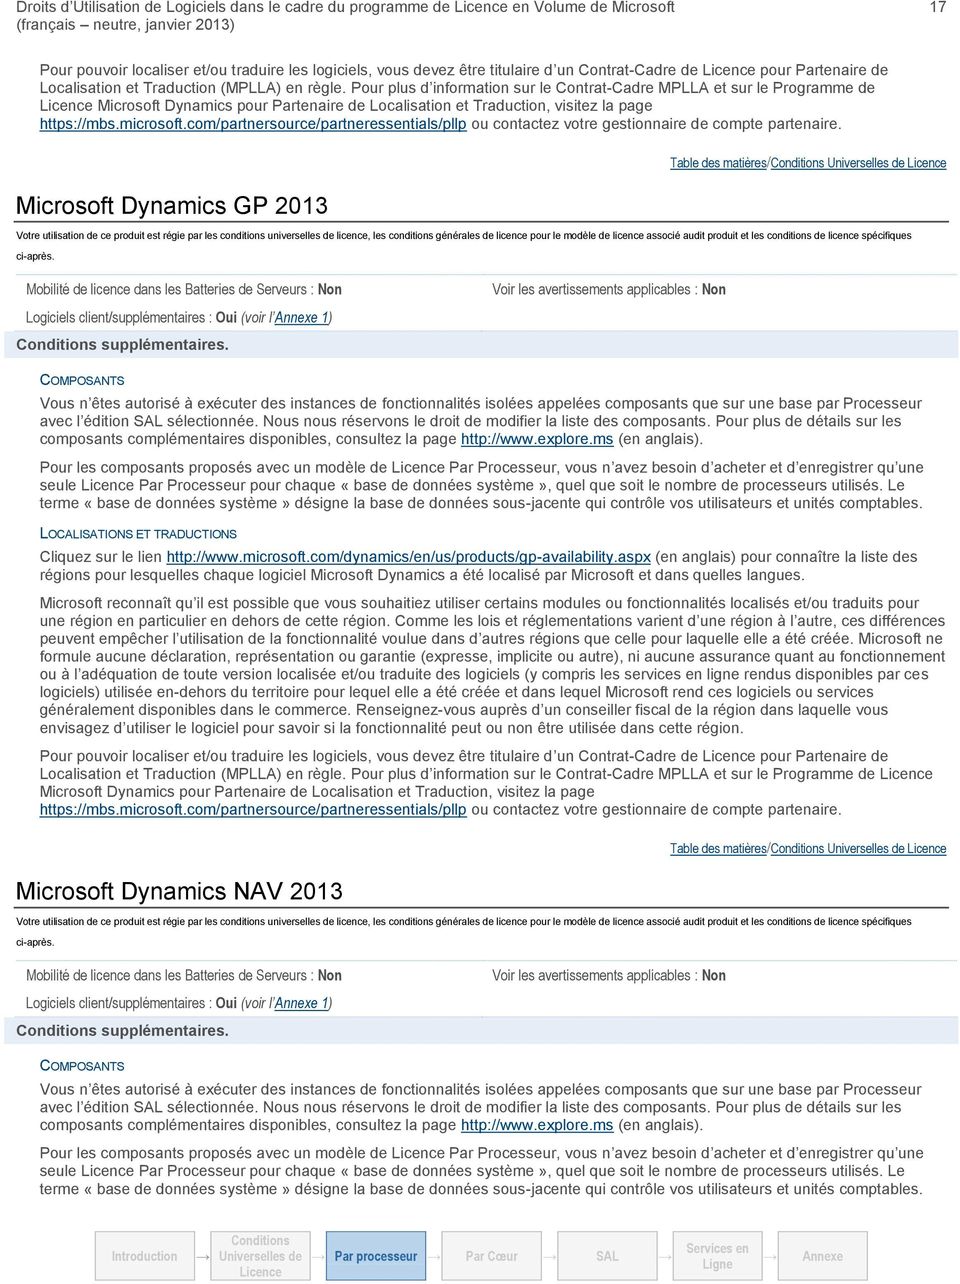 com/partnersource/partneressentials/pllp ou contactez votre gestionnaire de compte partenaire. Microsoft Dynamics GP 2013 Table des matières/ ci après.